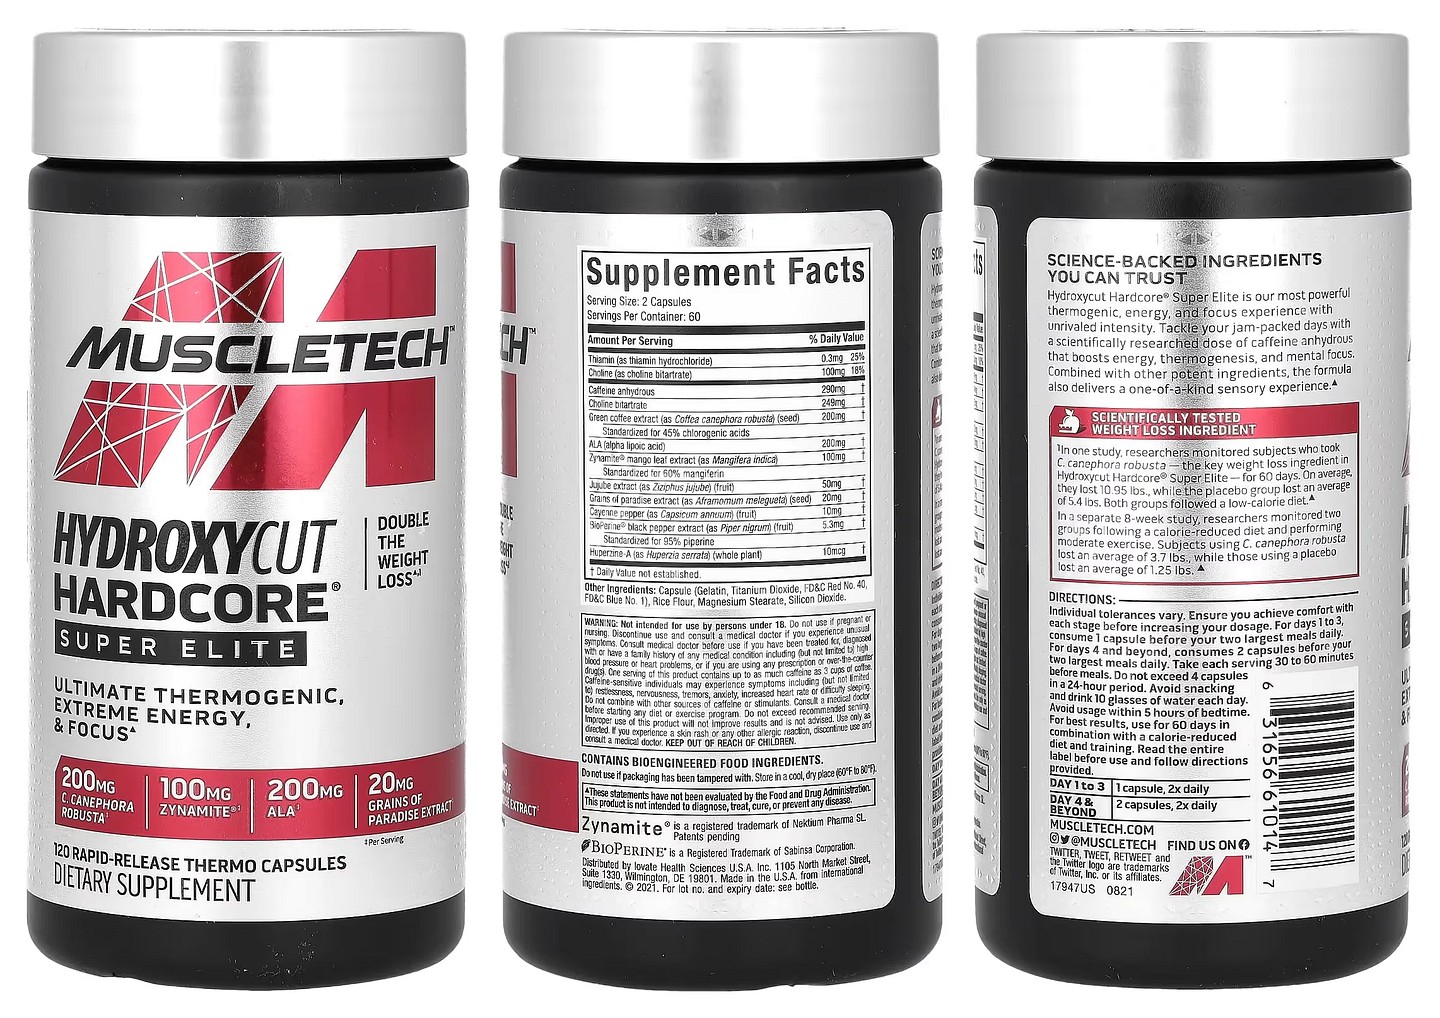 MuscleTech, Hydroxycut Hardcore packaging